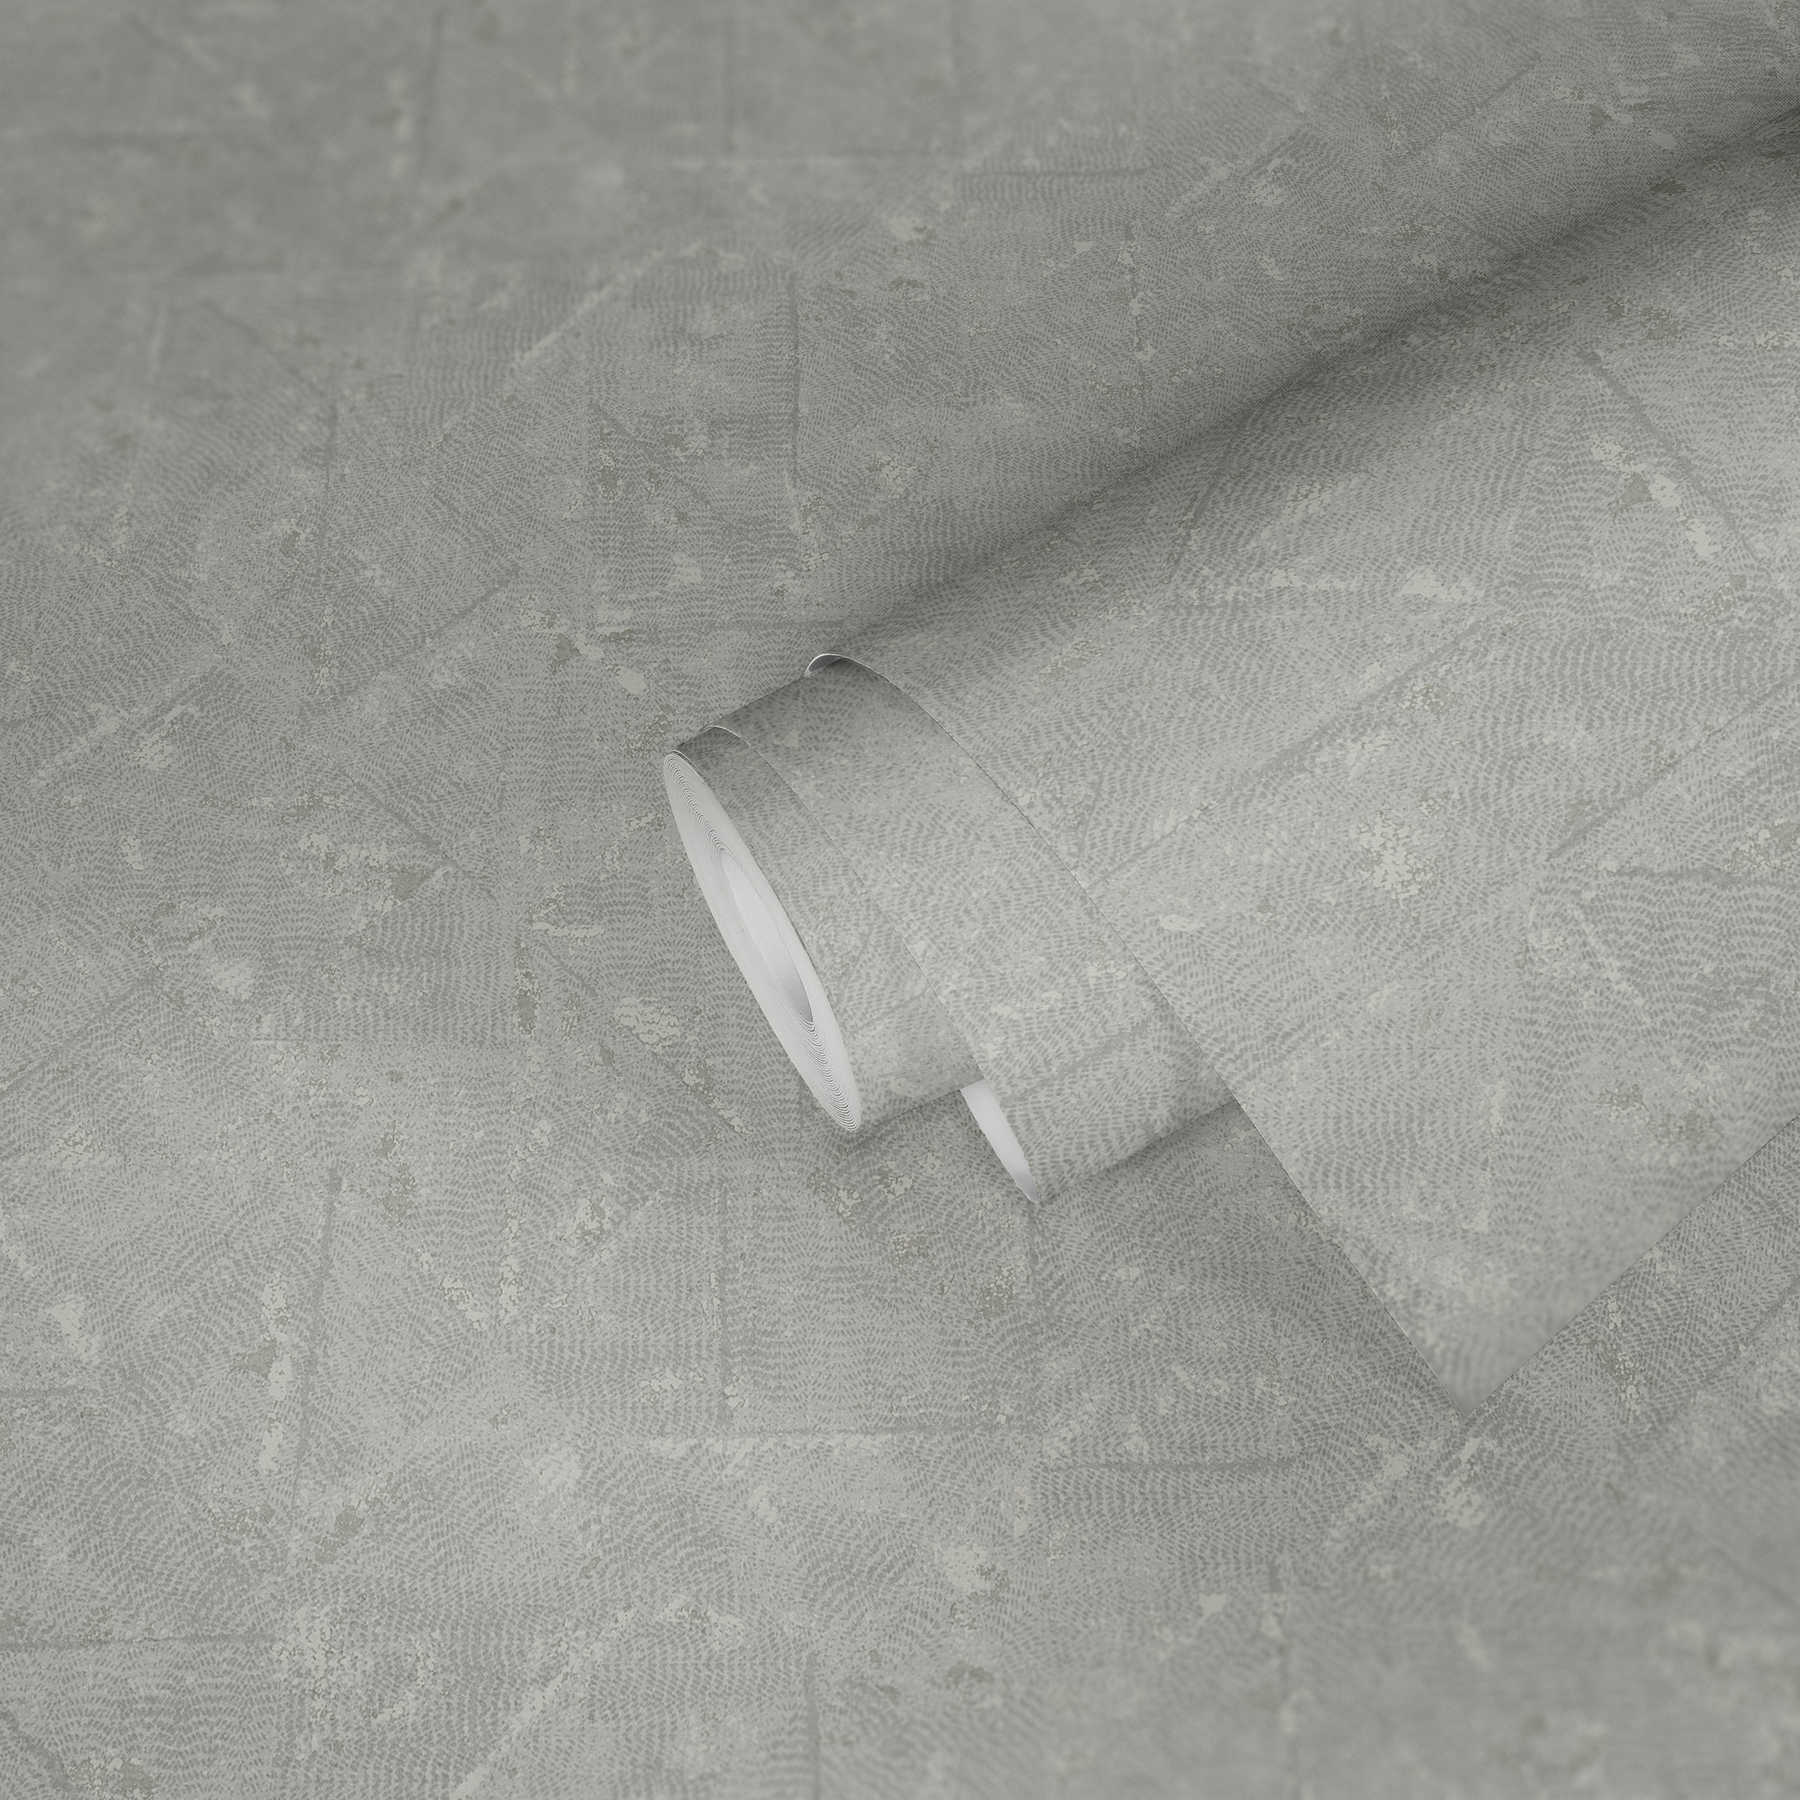             Hellgraue Uni Tapete mit asymmetrischen Details – Grau, Silber
        